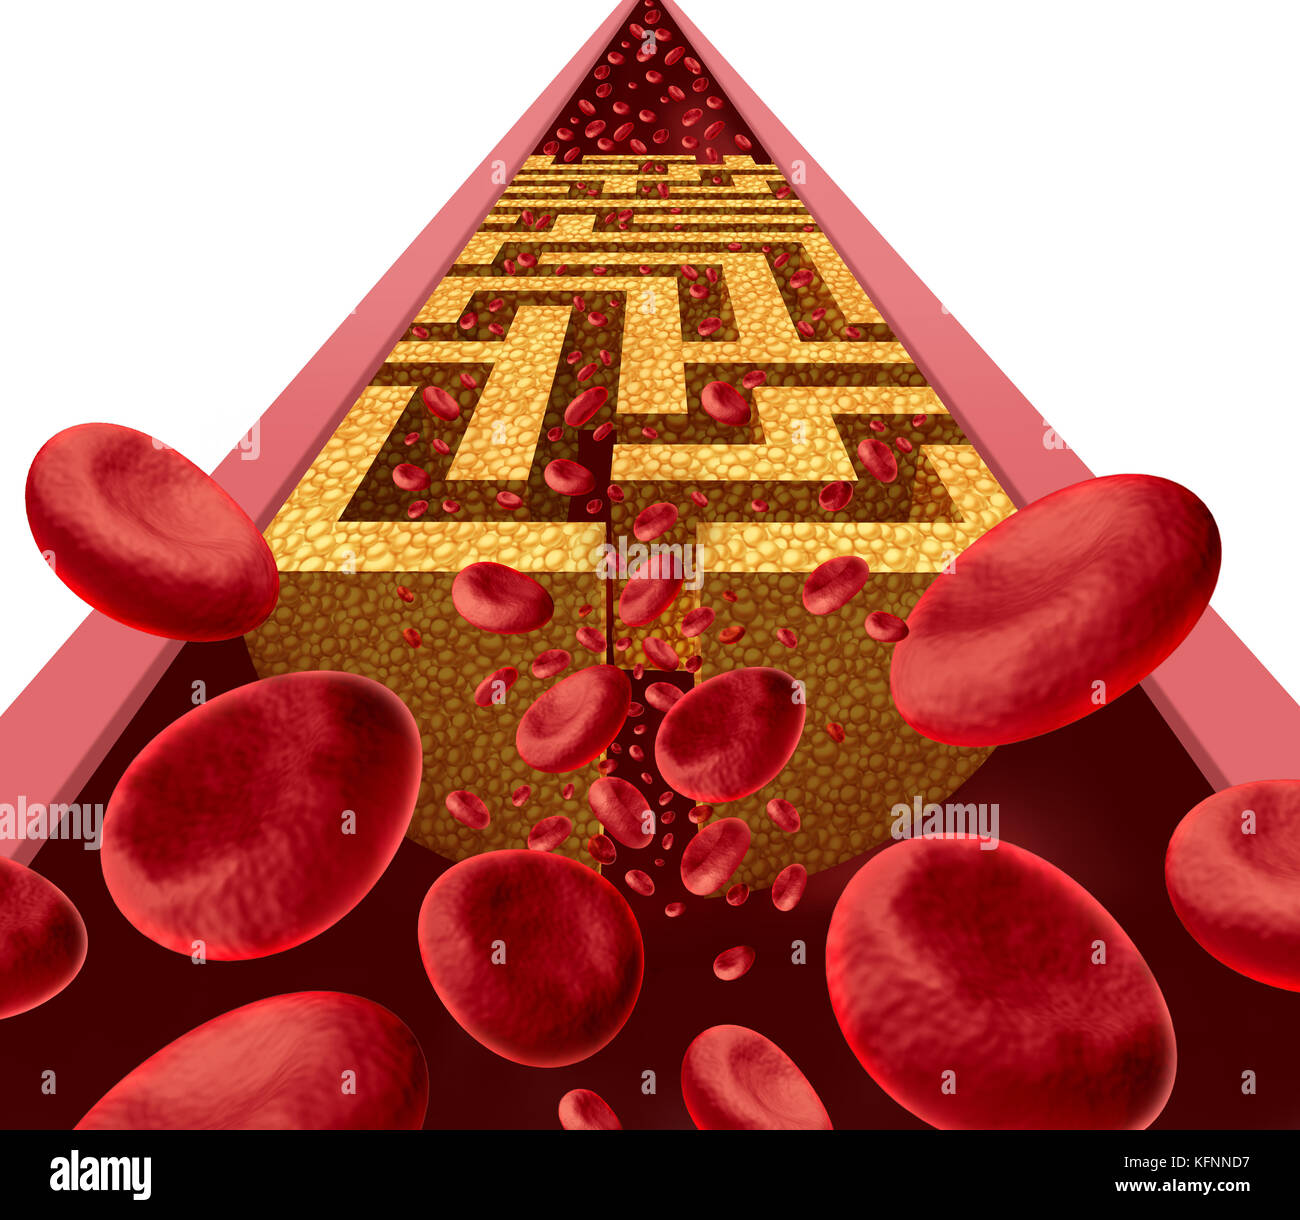 Cholesterin Krankheit Herausforderung und verstopfte Arterie medizinische koronare Gesundheit Risiko als eine Blockierung in den Arterien wie ein Labyrinth oder Irrgarten mit schmalen geprägt. Stockfoto